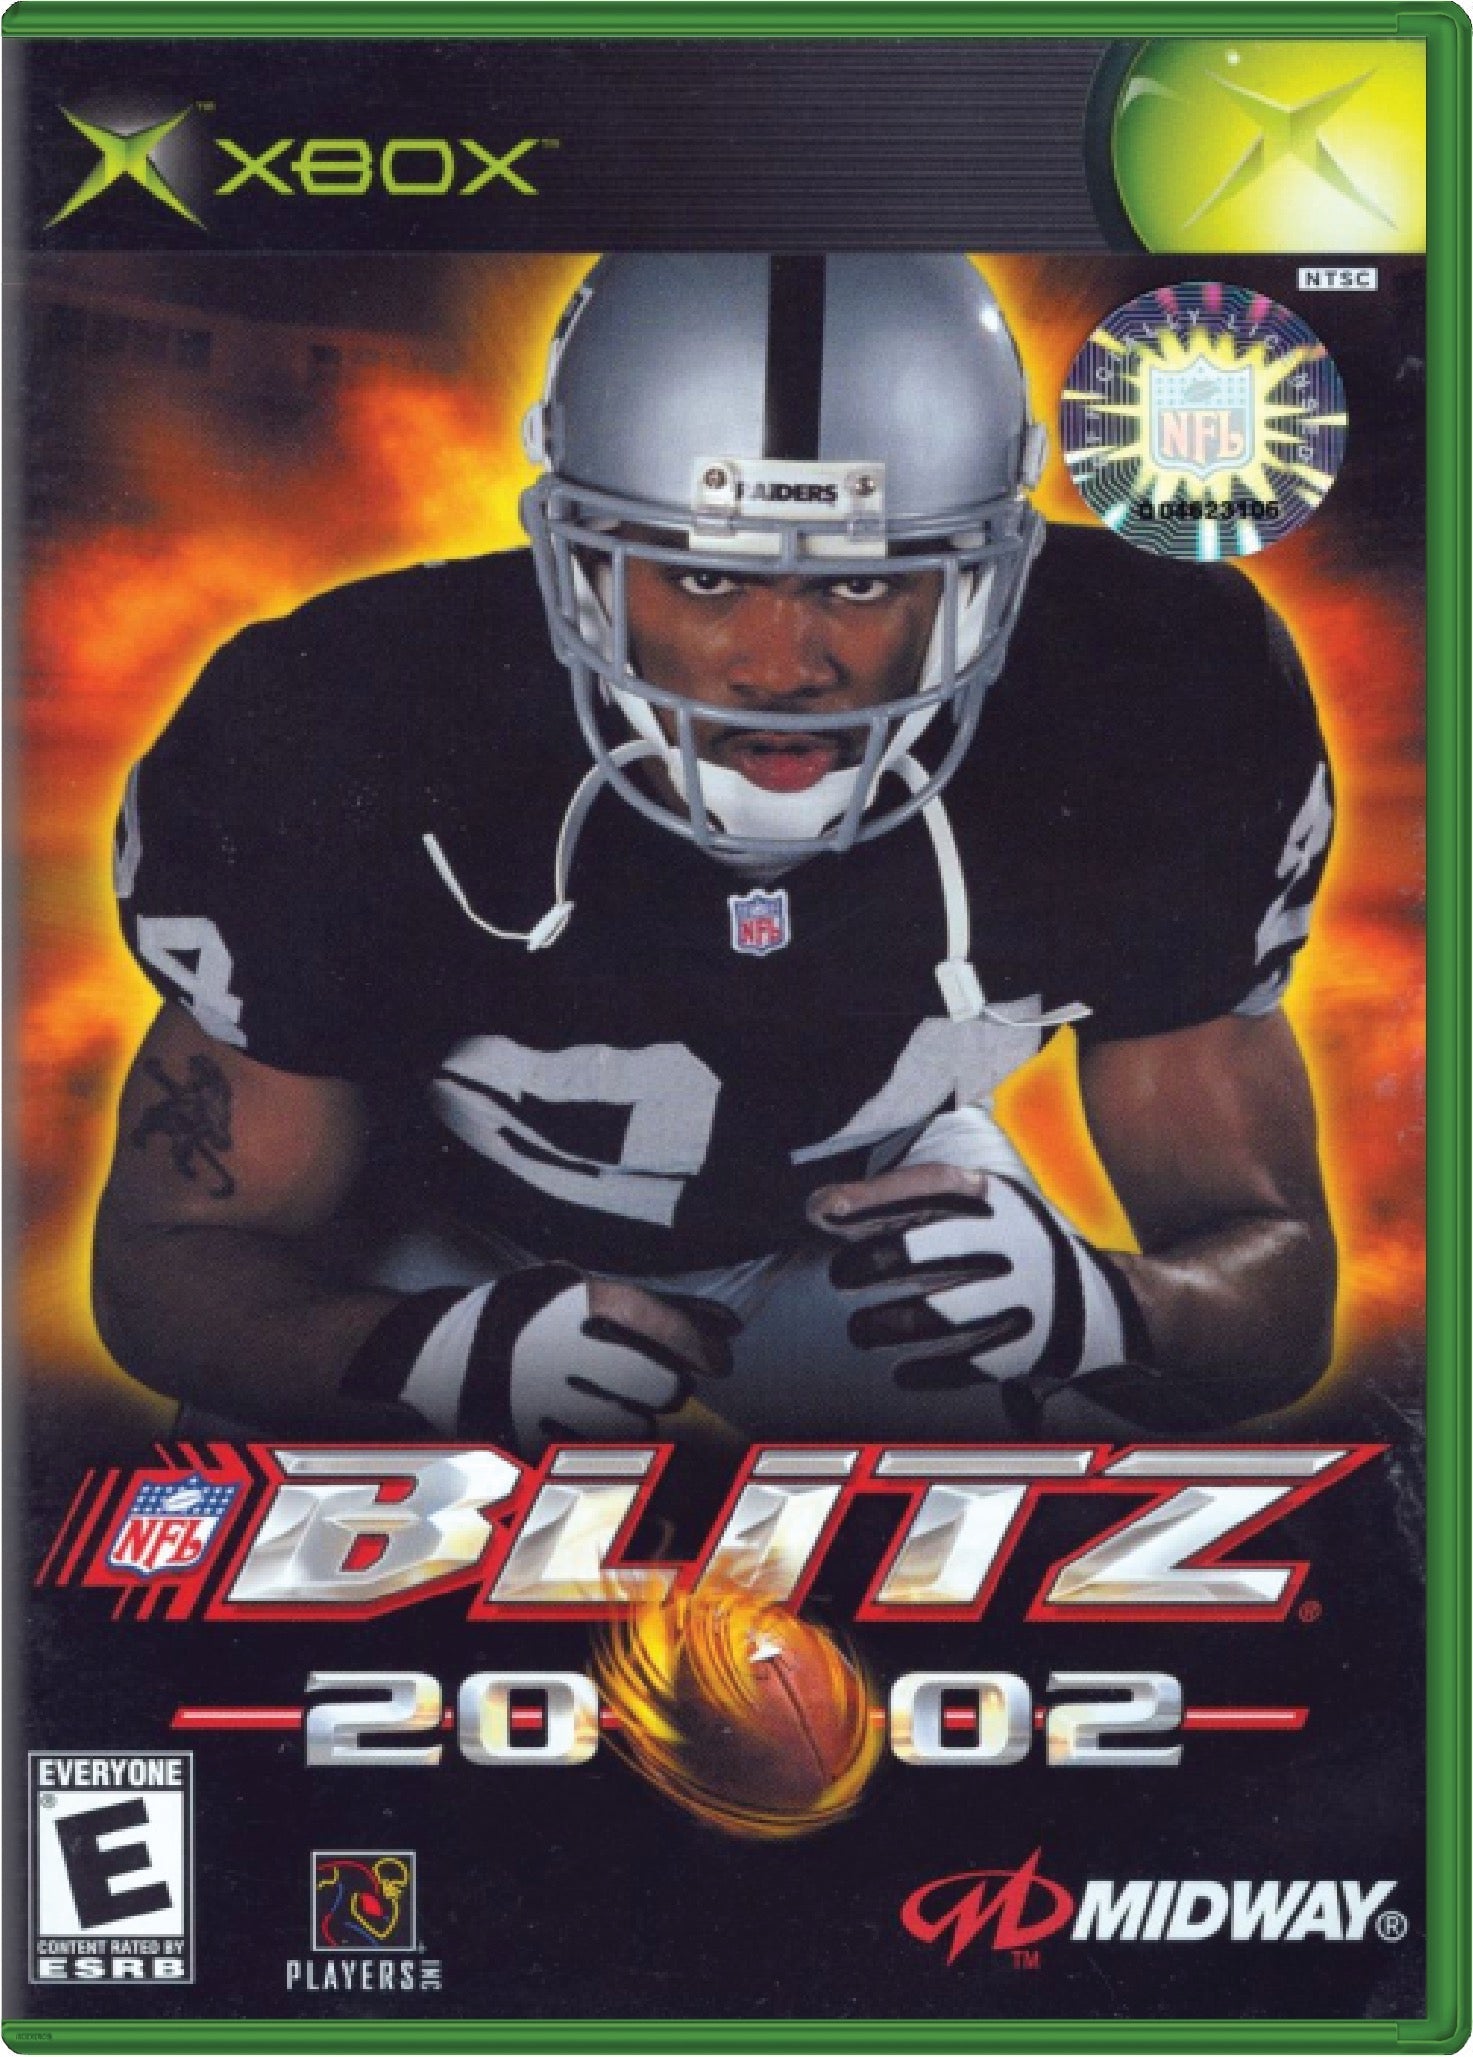 NFL Blitz 2002 Cover Art